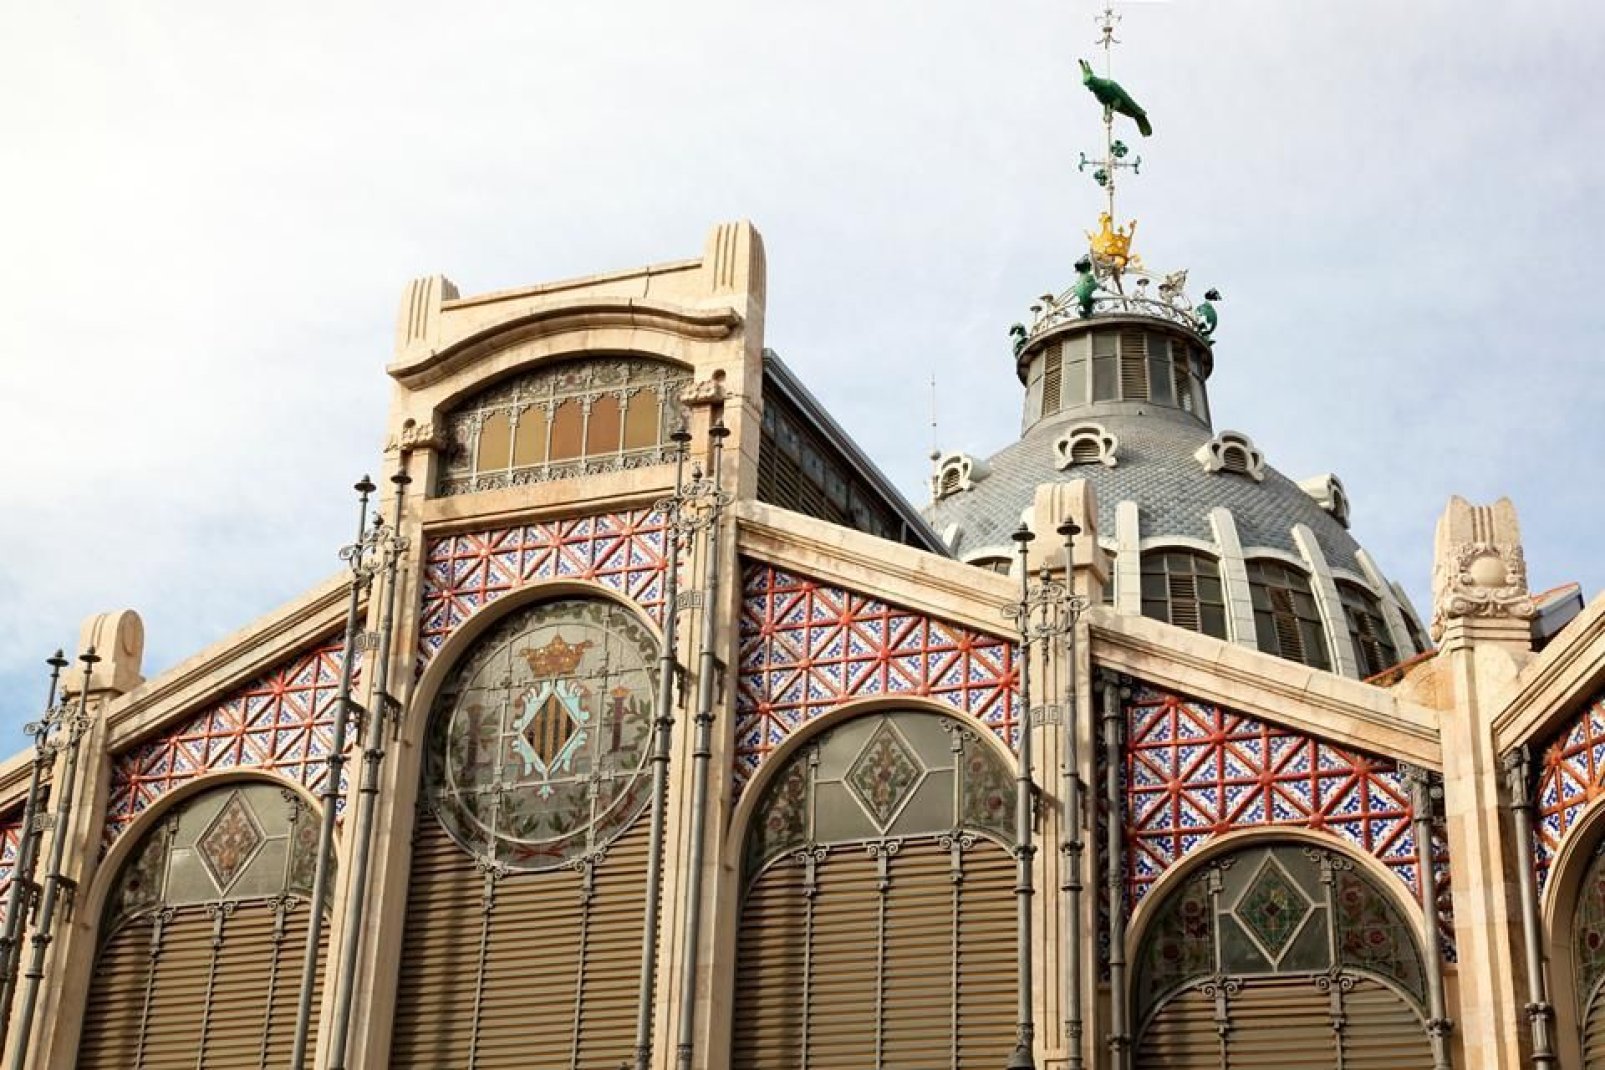 Dieses riesige Bauwerk im Art-Nouveau-Stil wurde 1928 eingeweiht und besteht aus Eisen, Ziegeln, Fayencen und Mosaiken.